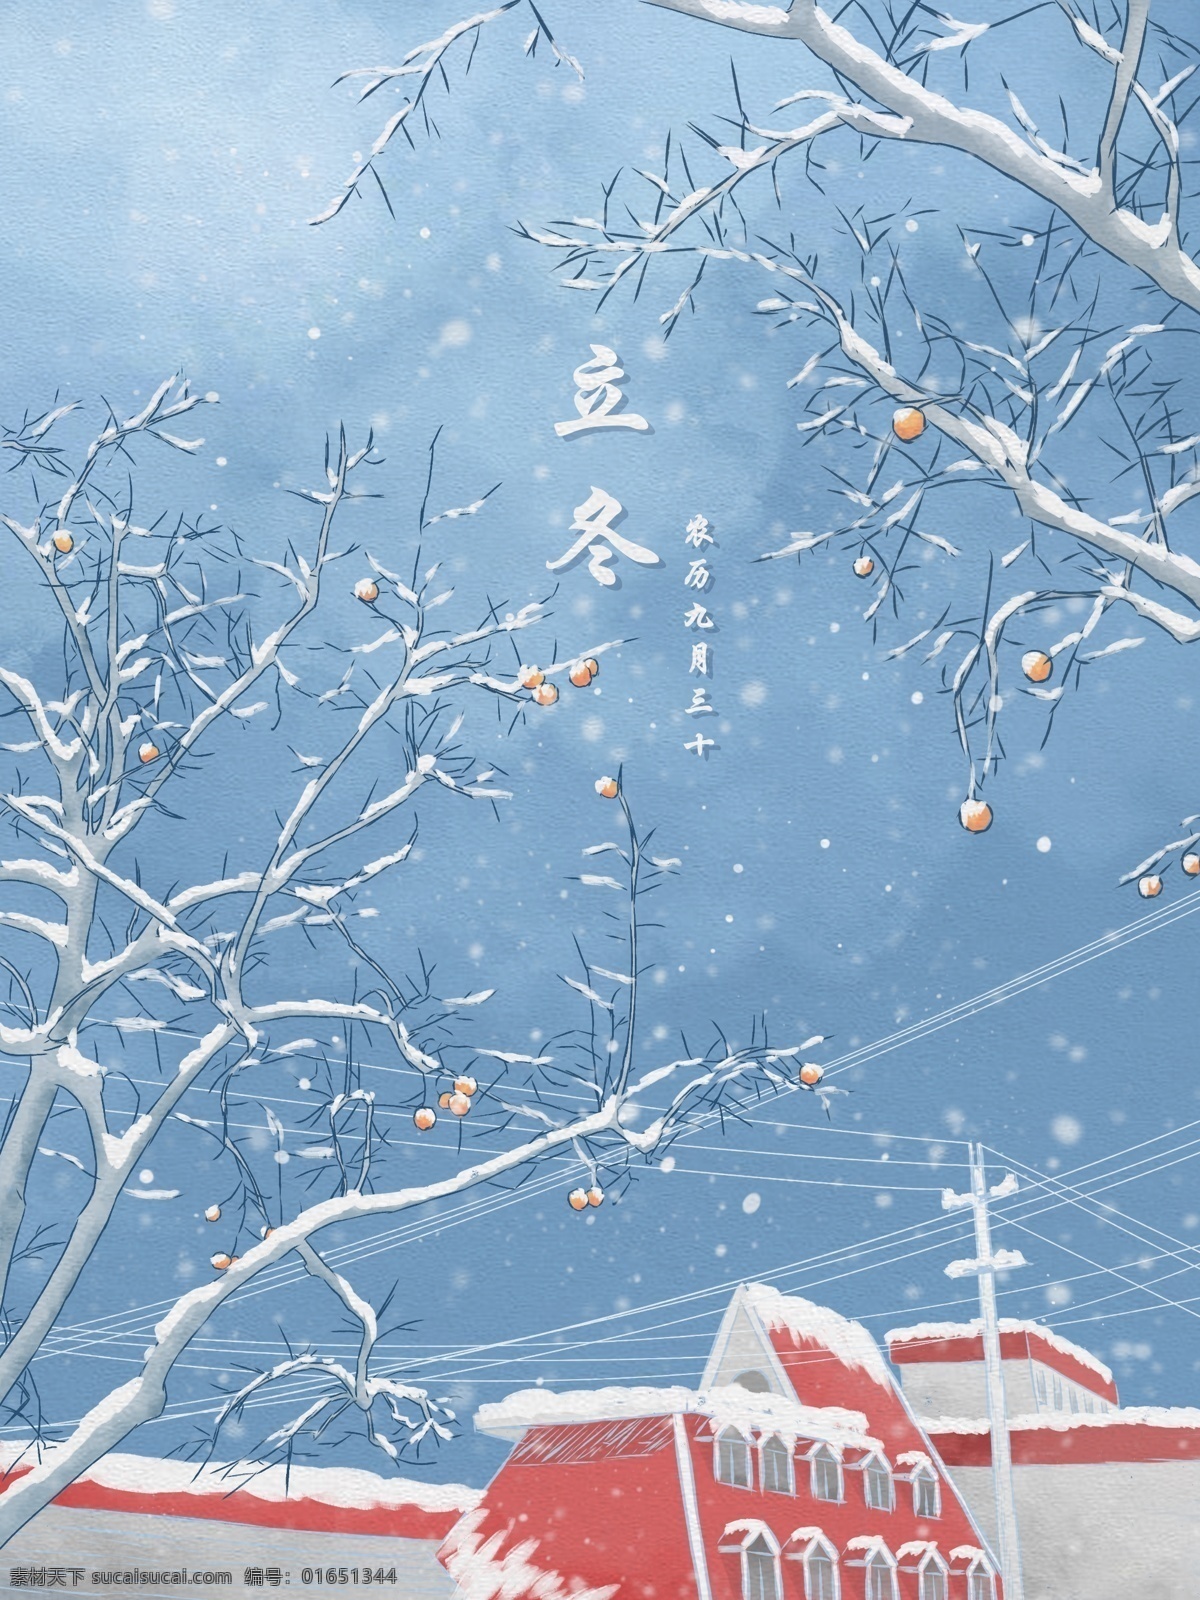 立冬 水彩 插画 落雪 屋顶 柿子 树 冬天 雪景 蓝色 清新 壁纸 雪 积雪 背景